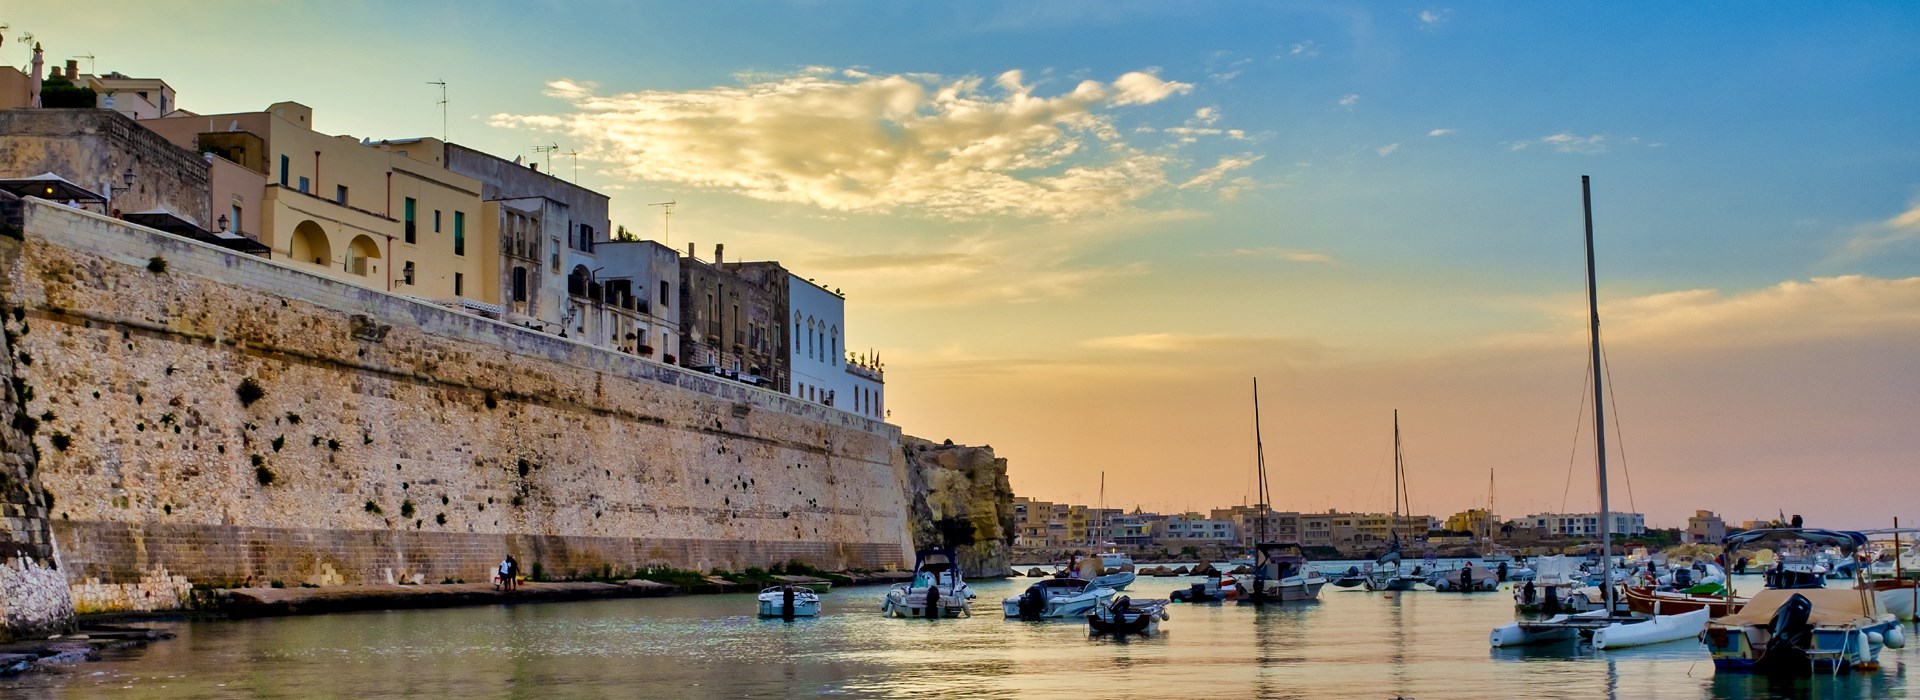 Visiter Otranto - Italie